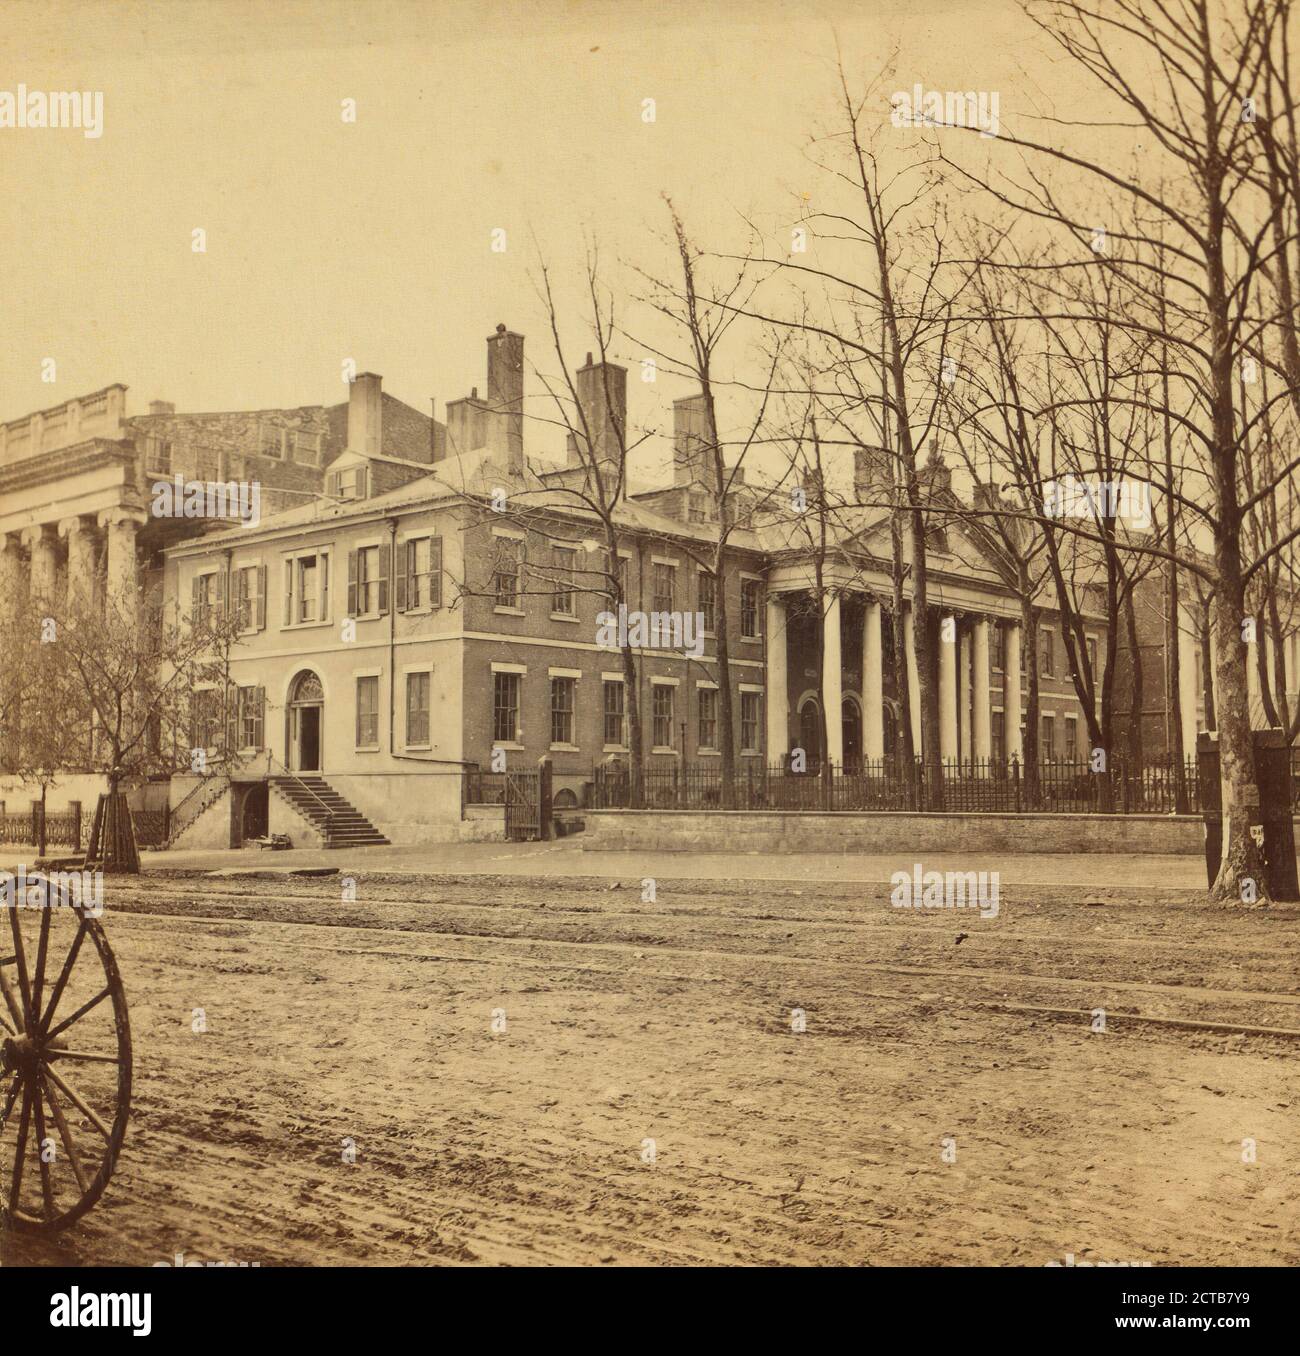 Département d'État, Wakely, G. D., 1865, Washington (D.C Banque D'Images